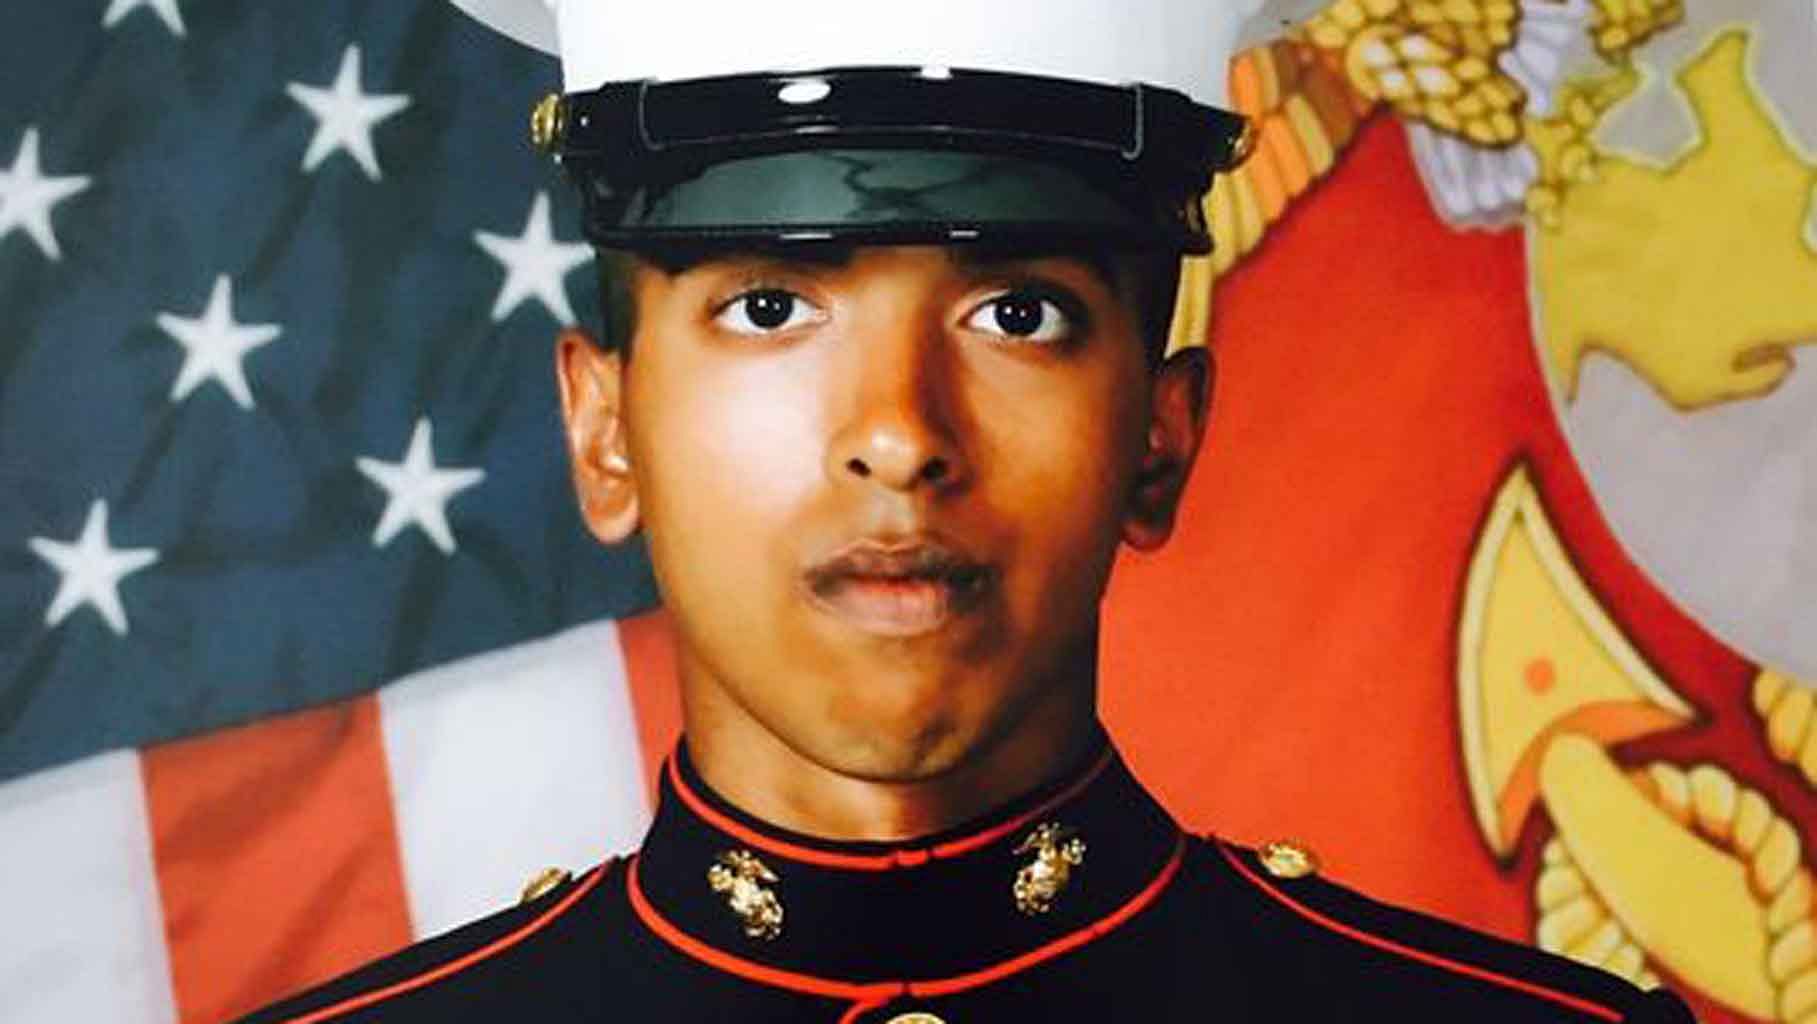 Indian origin ex-US marine, Imran Yousof (Photo Courtesy: marinecorpstimes.com)